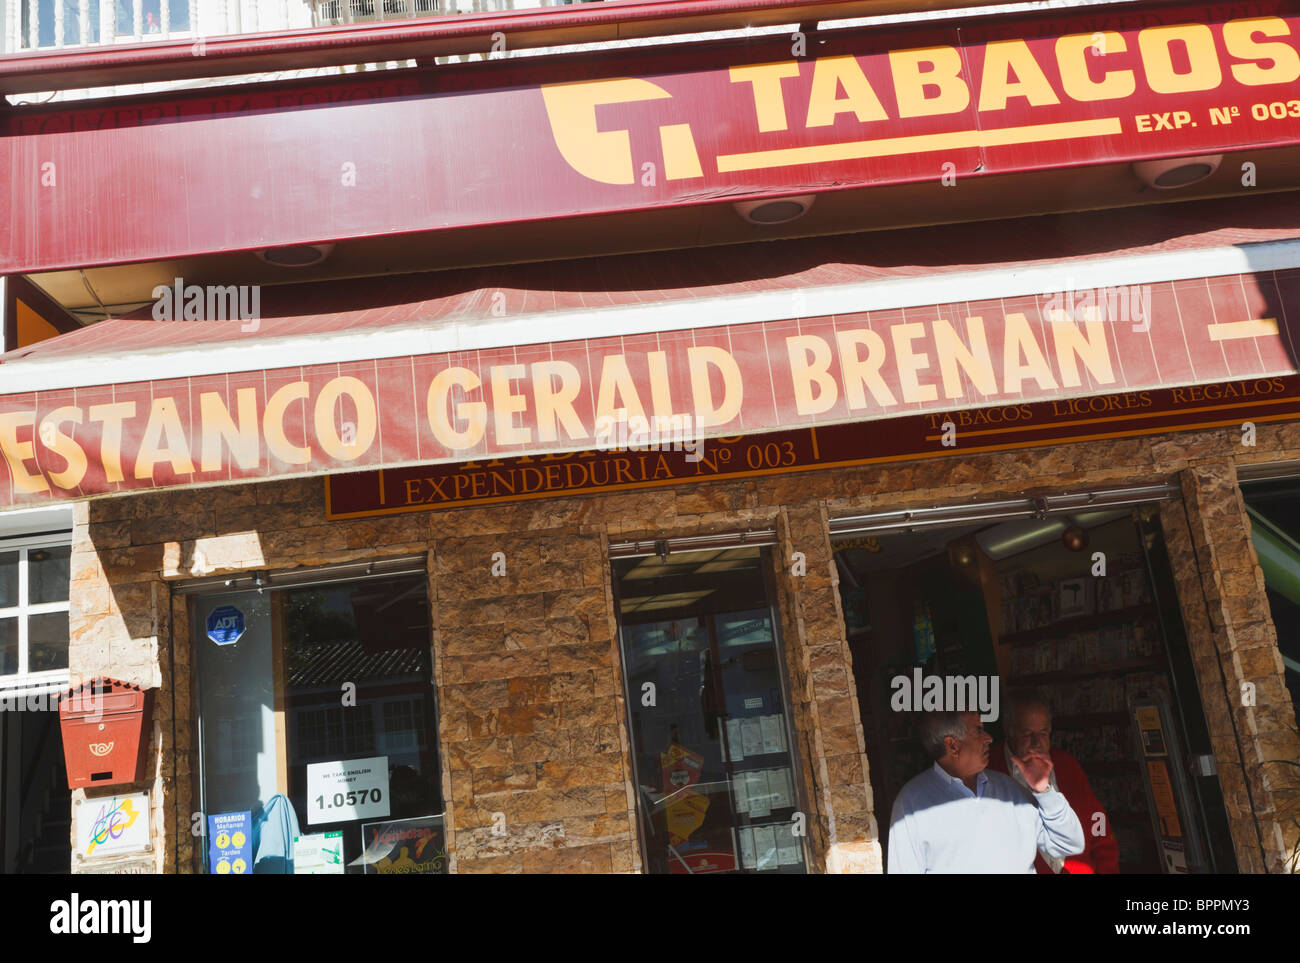 Estanco Gerald Brenan. The Gerald Brenan tobacco shop in Alhaurin el Grande, Malaga Province, Spain. Stock Photo